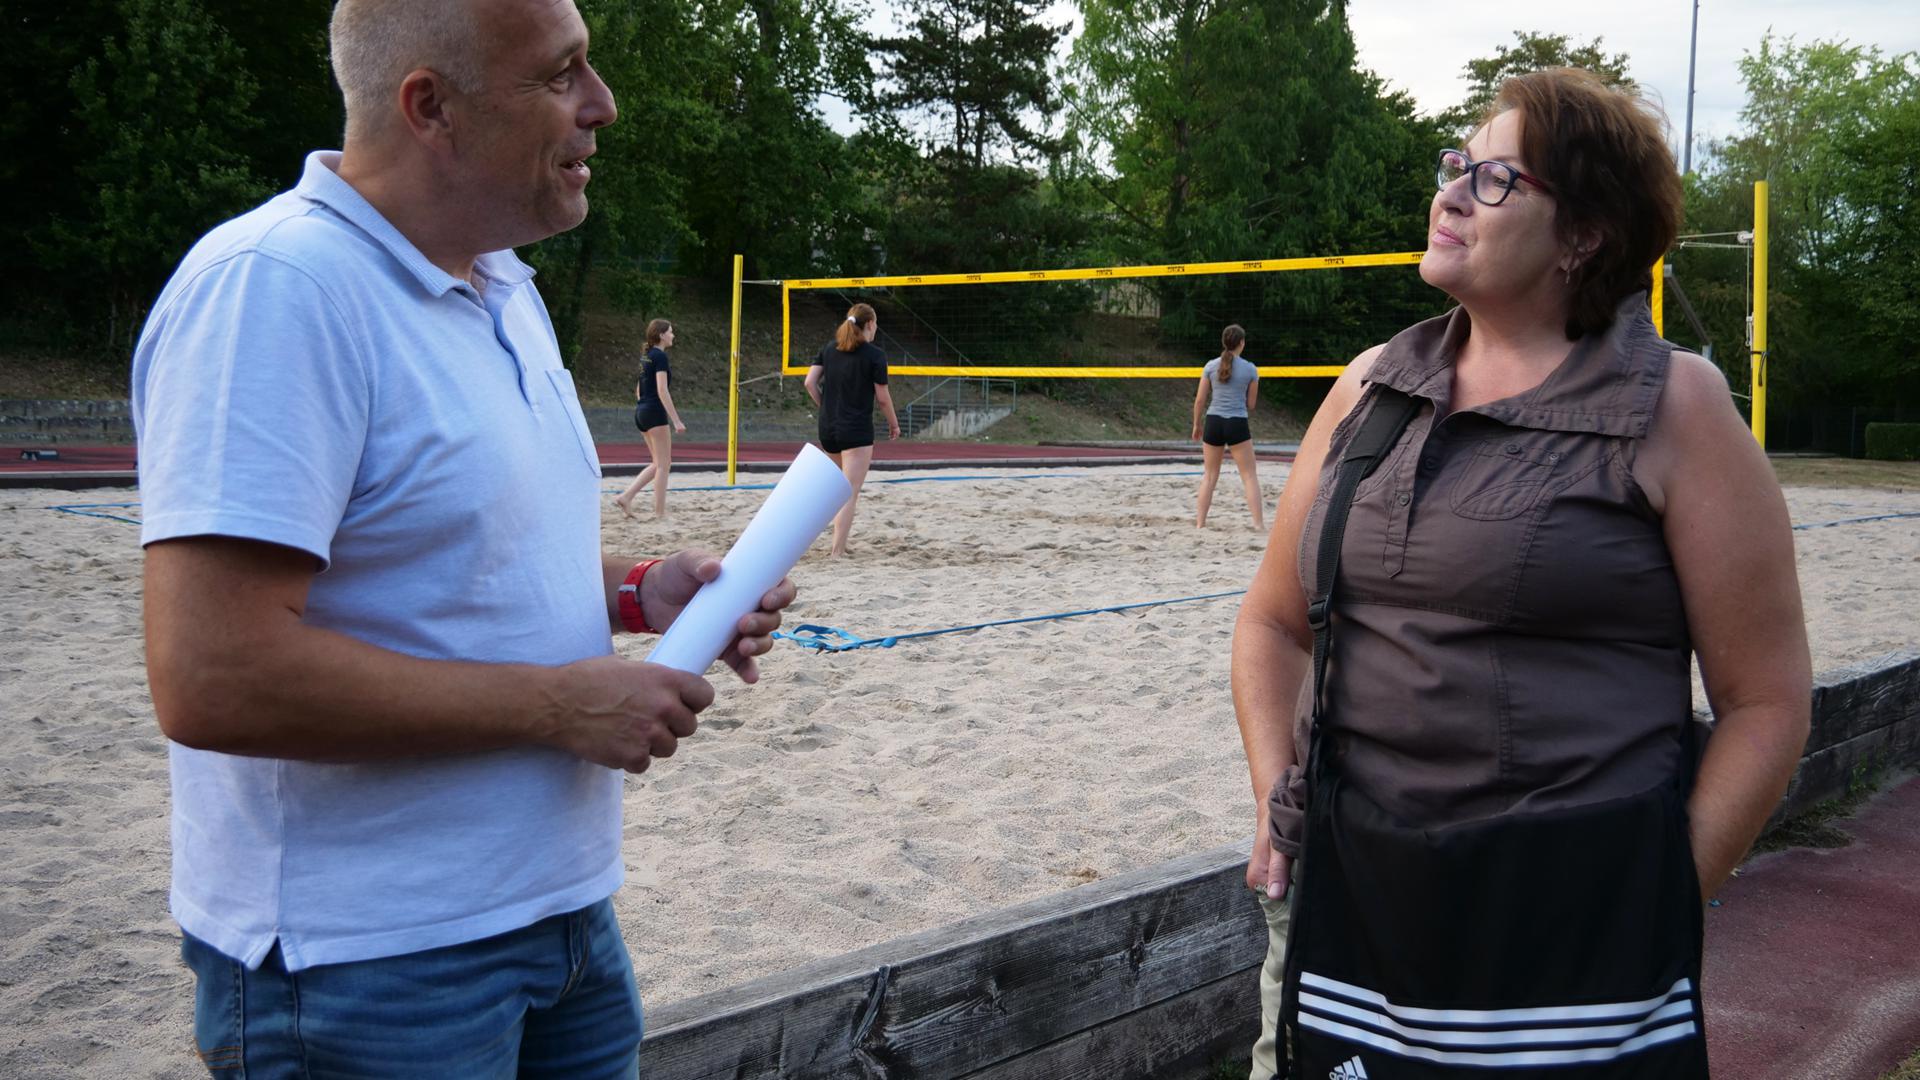 Ein Mann und eine Frau stehen vor einem Beachvolleyball-Feld und sprechen miteinander.